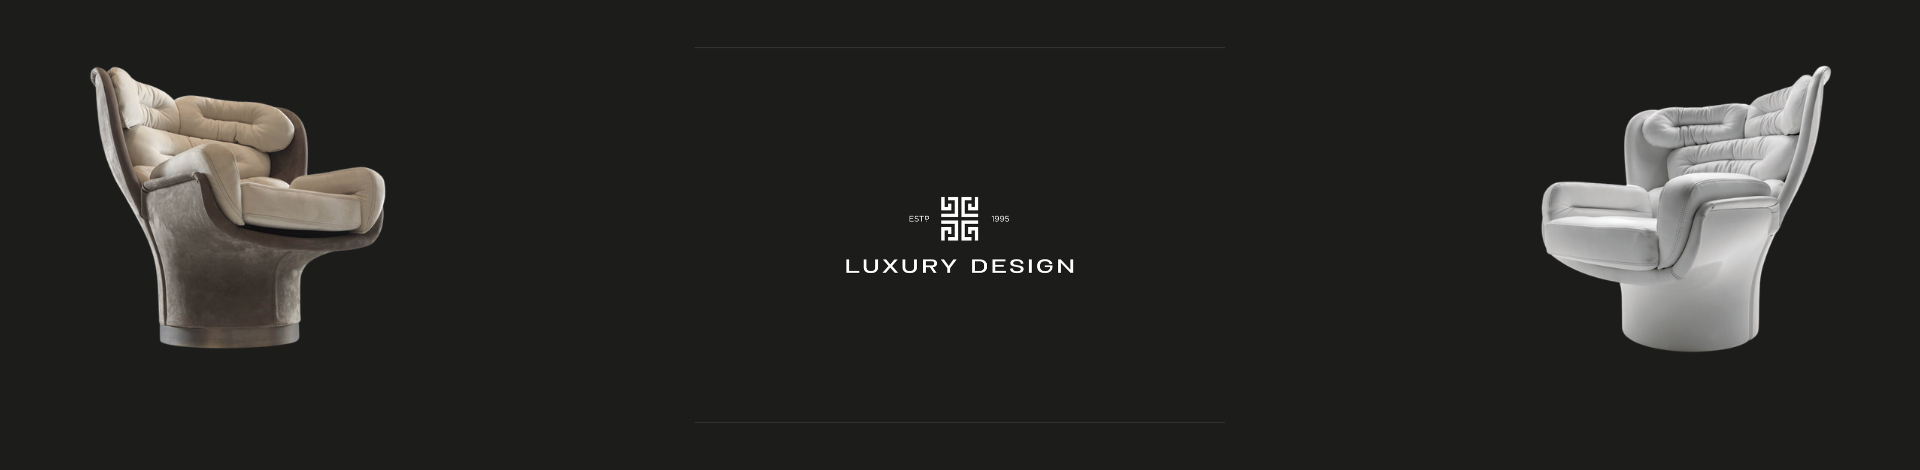 Luxury Design - ELDA by Joe Colombo